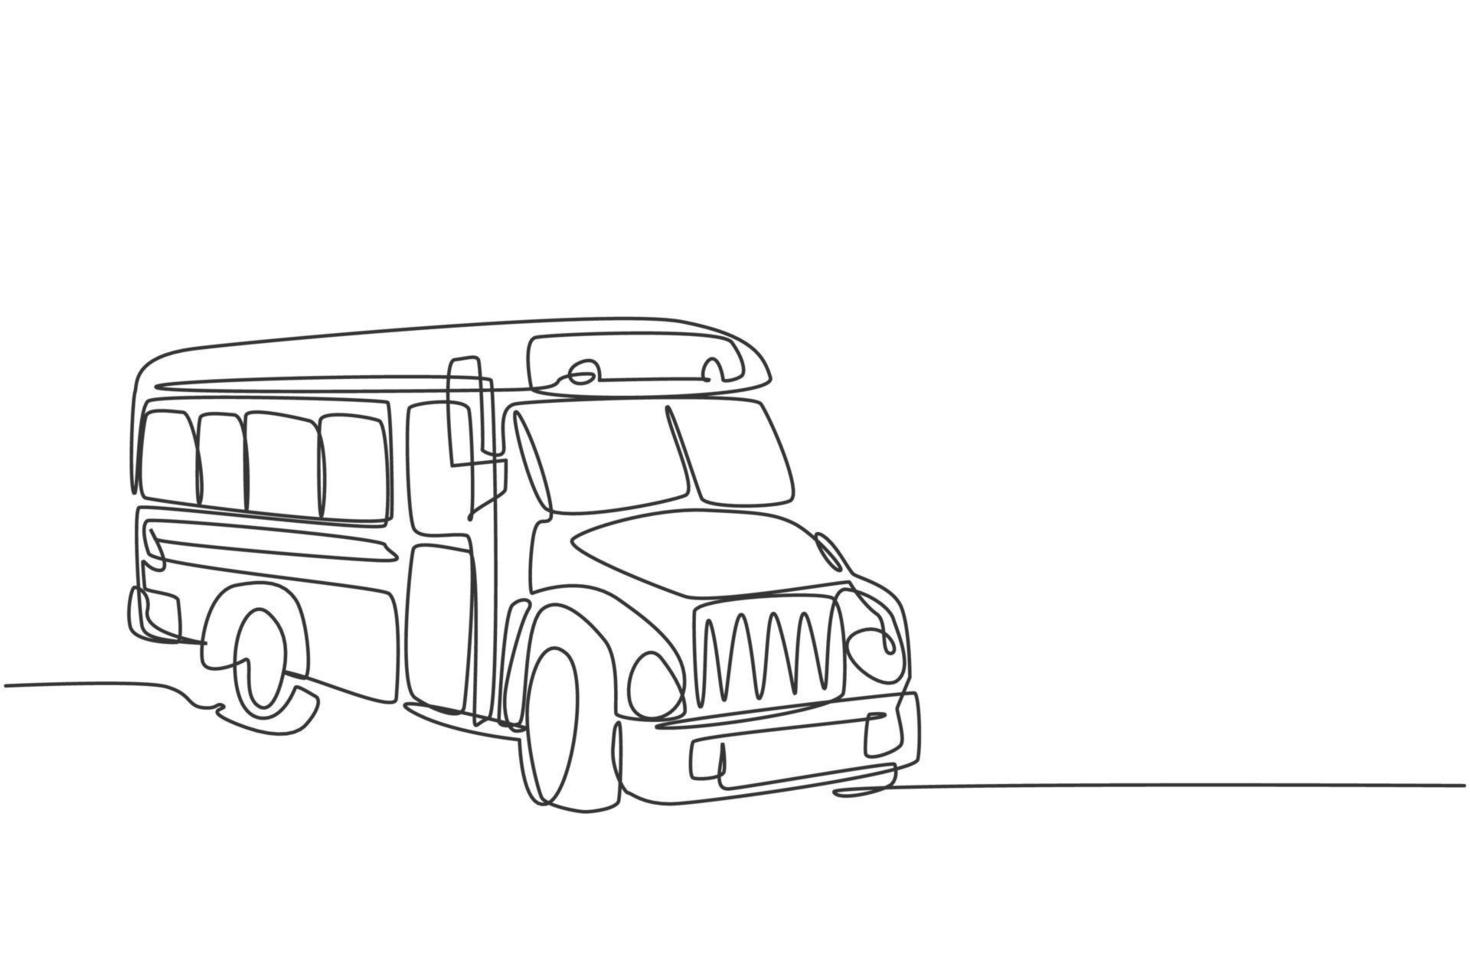 kontinuerlig enradsteckning gammal klassisk skolbusstransport för amerikanska studenter. tillbaka till skolan handritad minimalism koncept. enkel linje rita design för utbildning vektor grafisk illustration